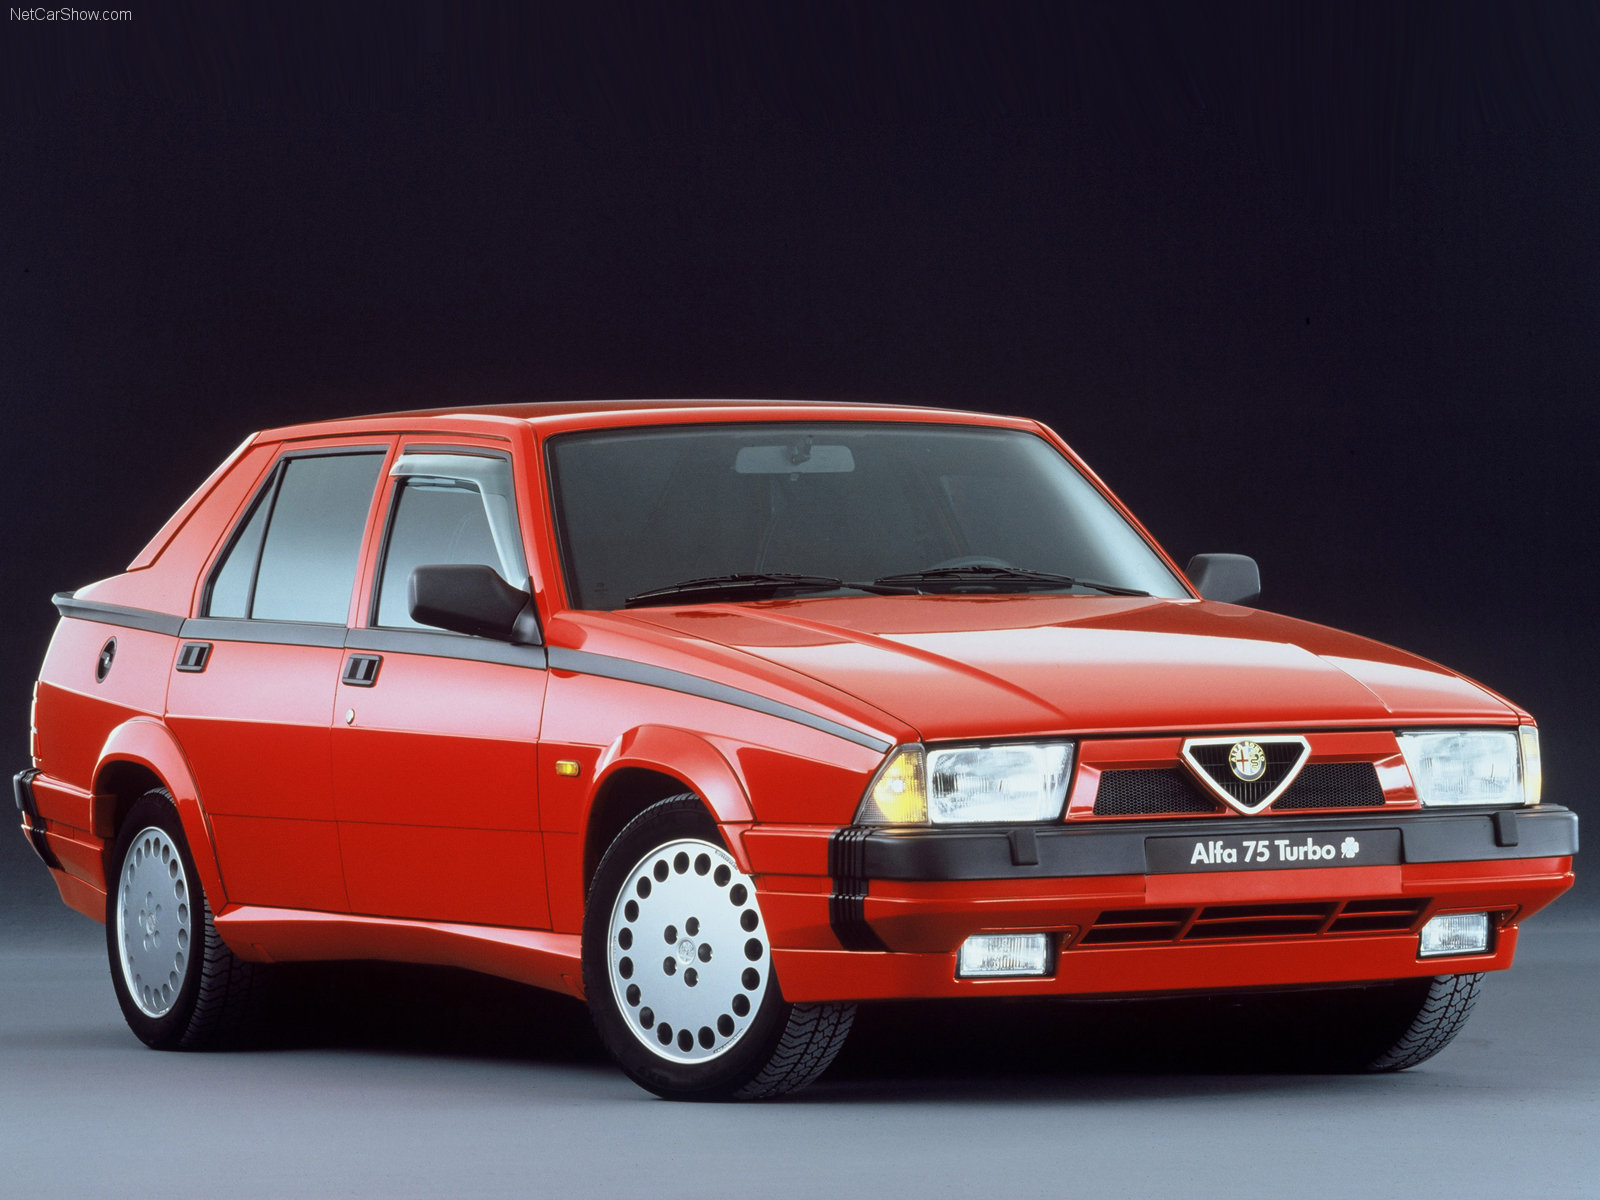 Alfa Romeo 75 Milano